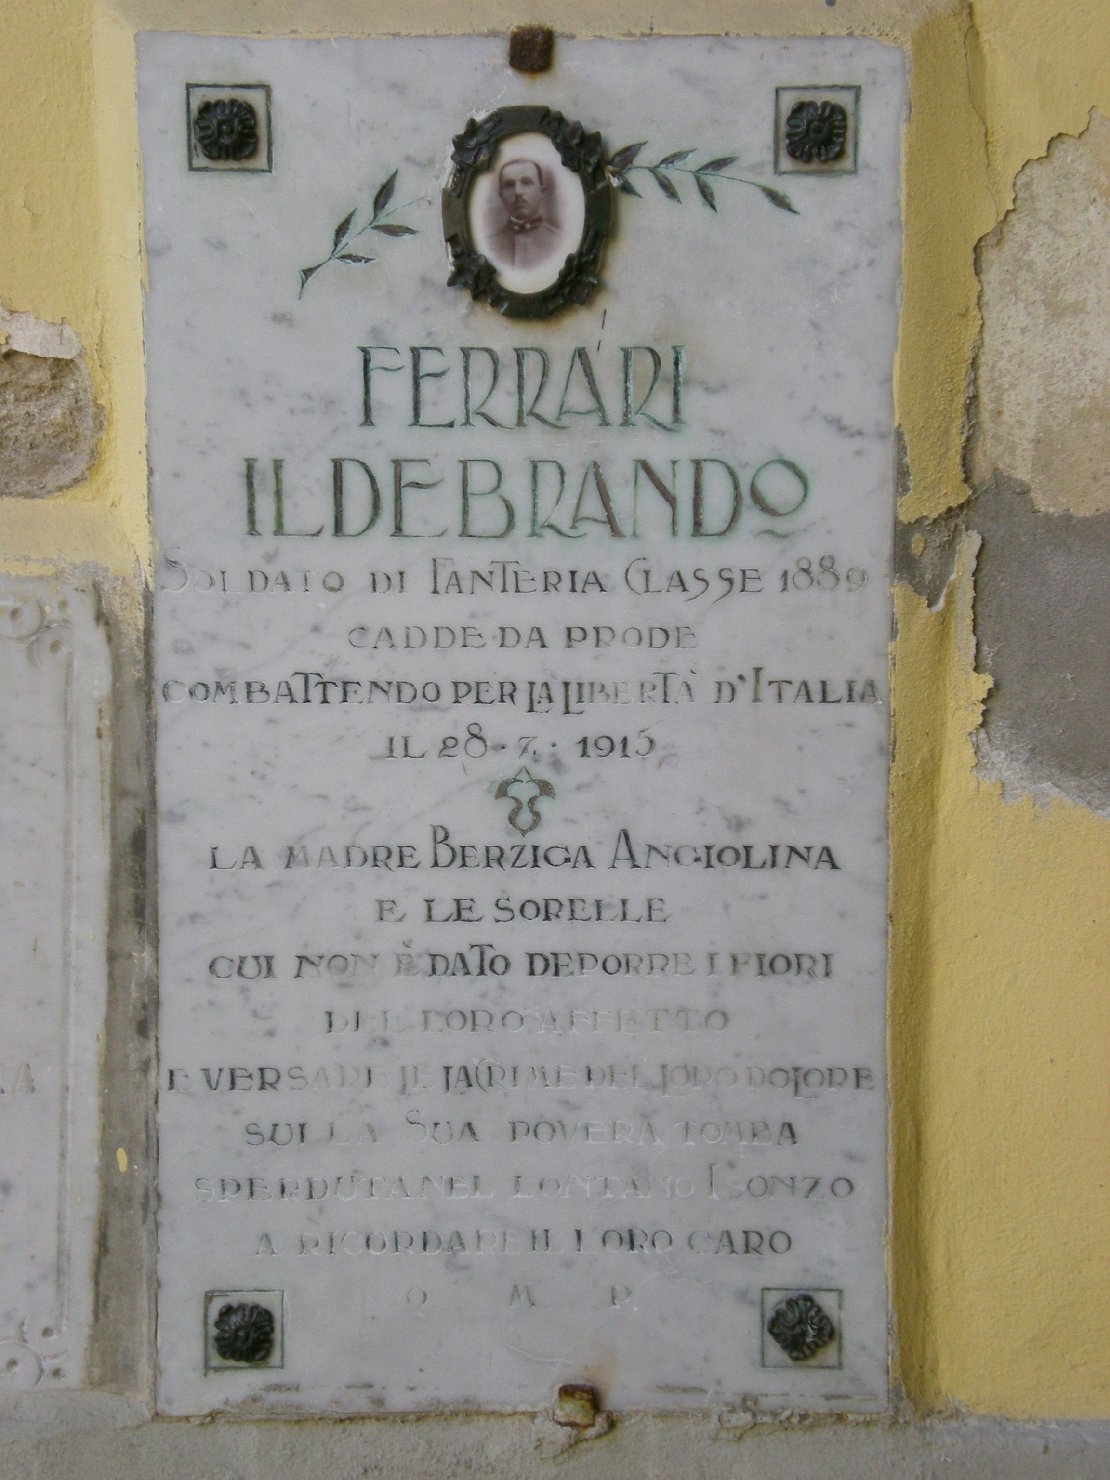 lapide commemorativa ai caduti - produzione emiliana (sec. XX)